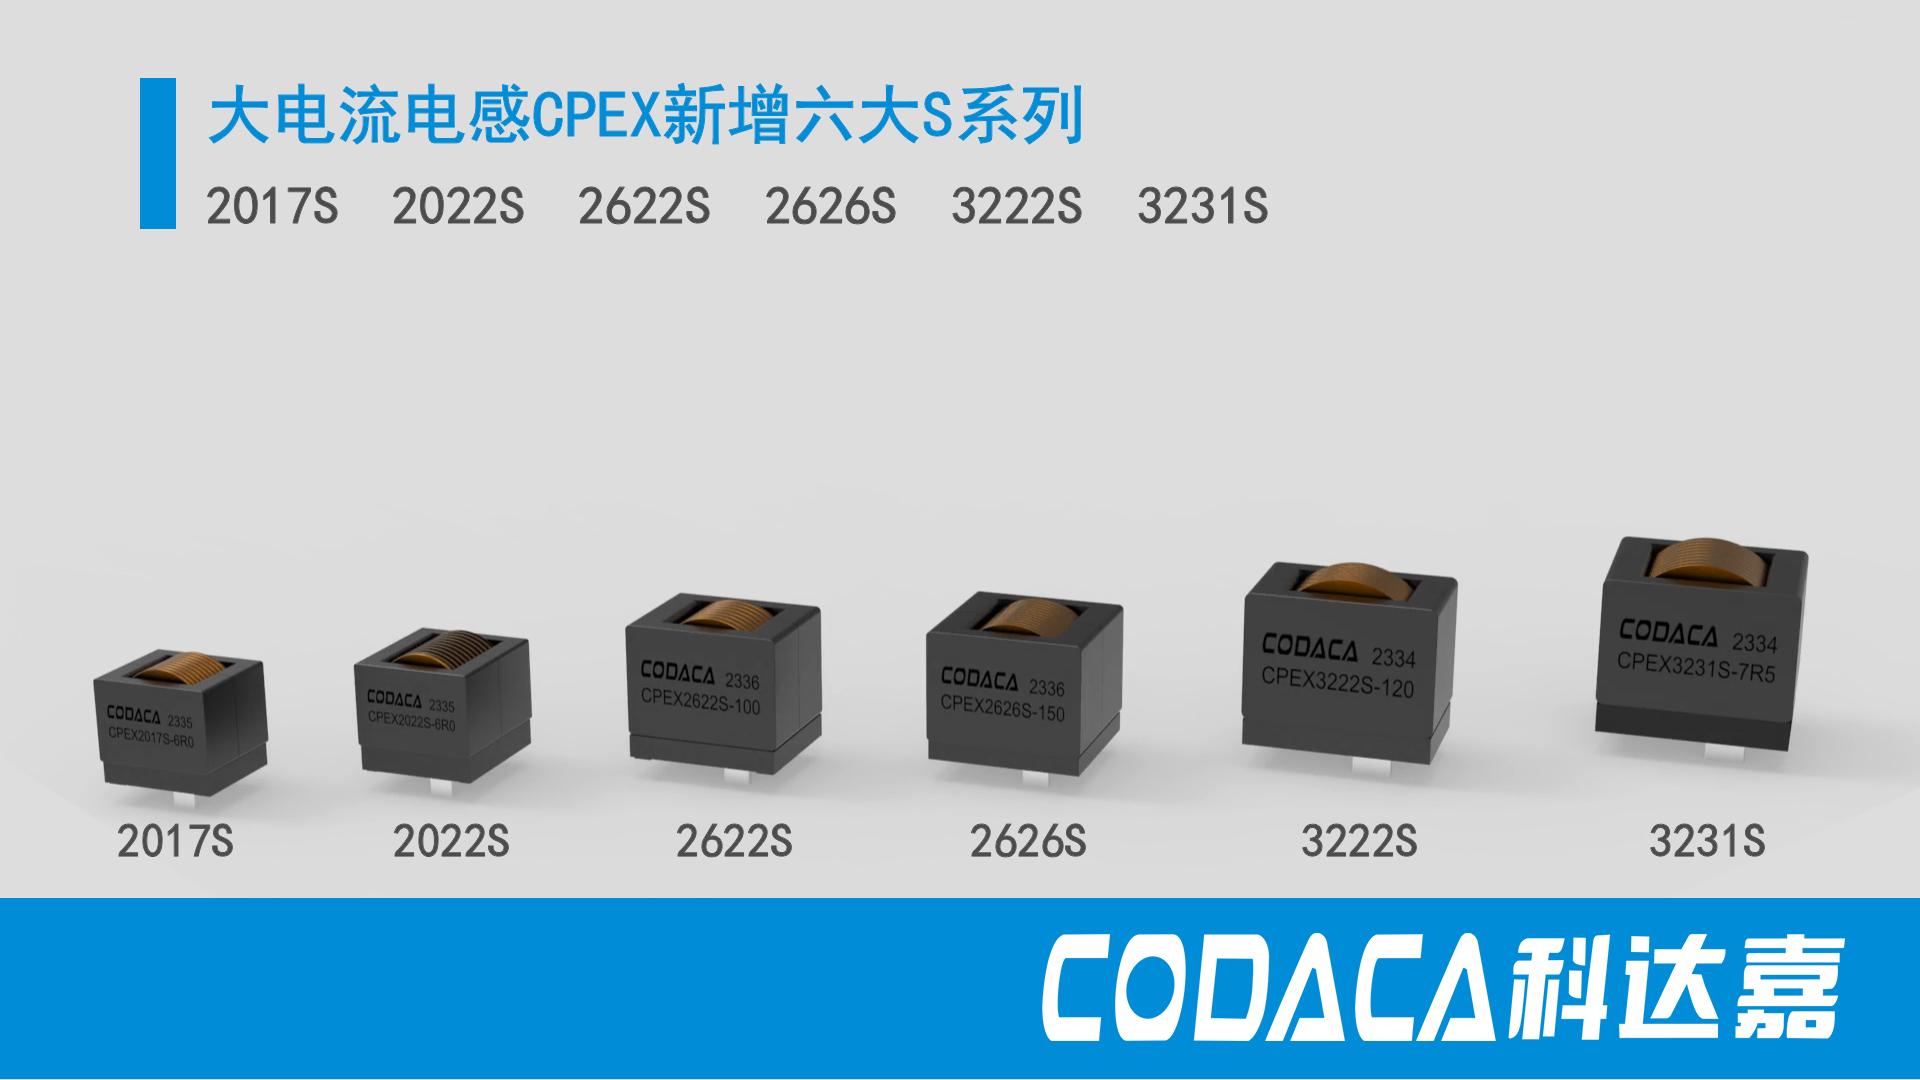 #大电流电感 #科达嘉 科达嘉大电流电感上新CPEX-S系列，为工业、新能源提供低损耗、高效率电感方案